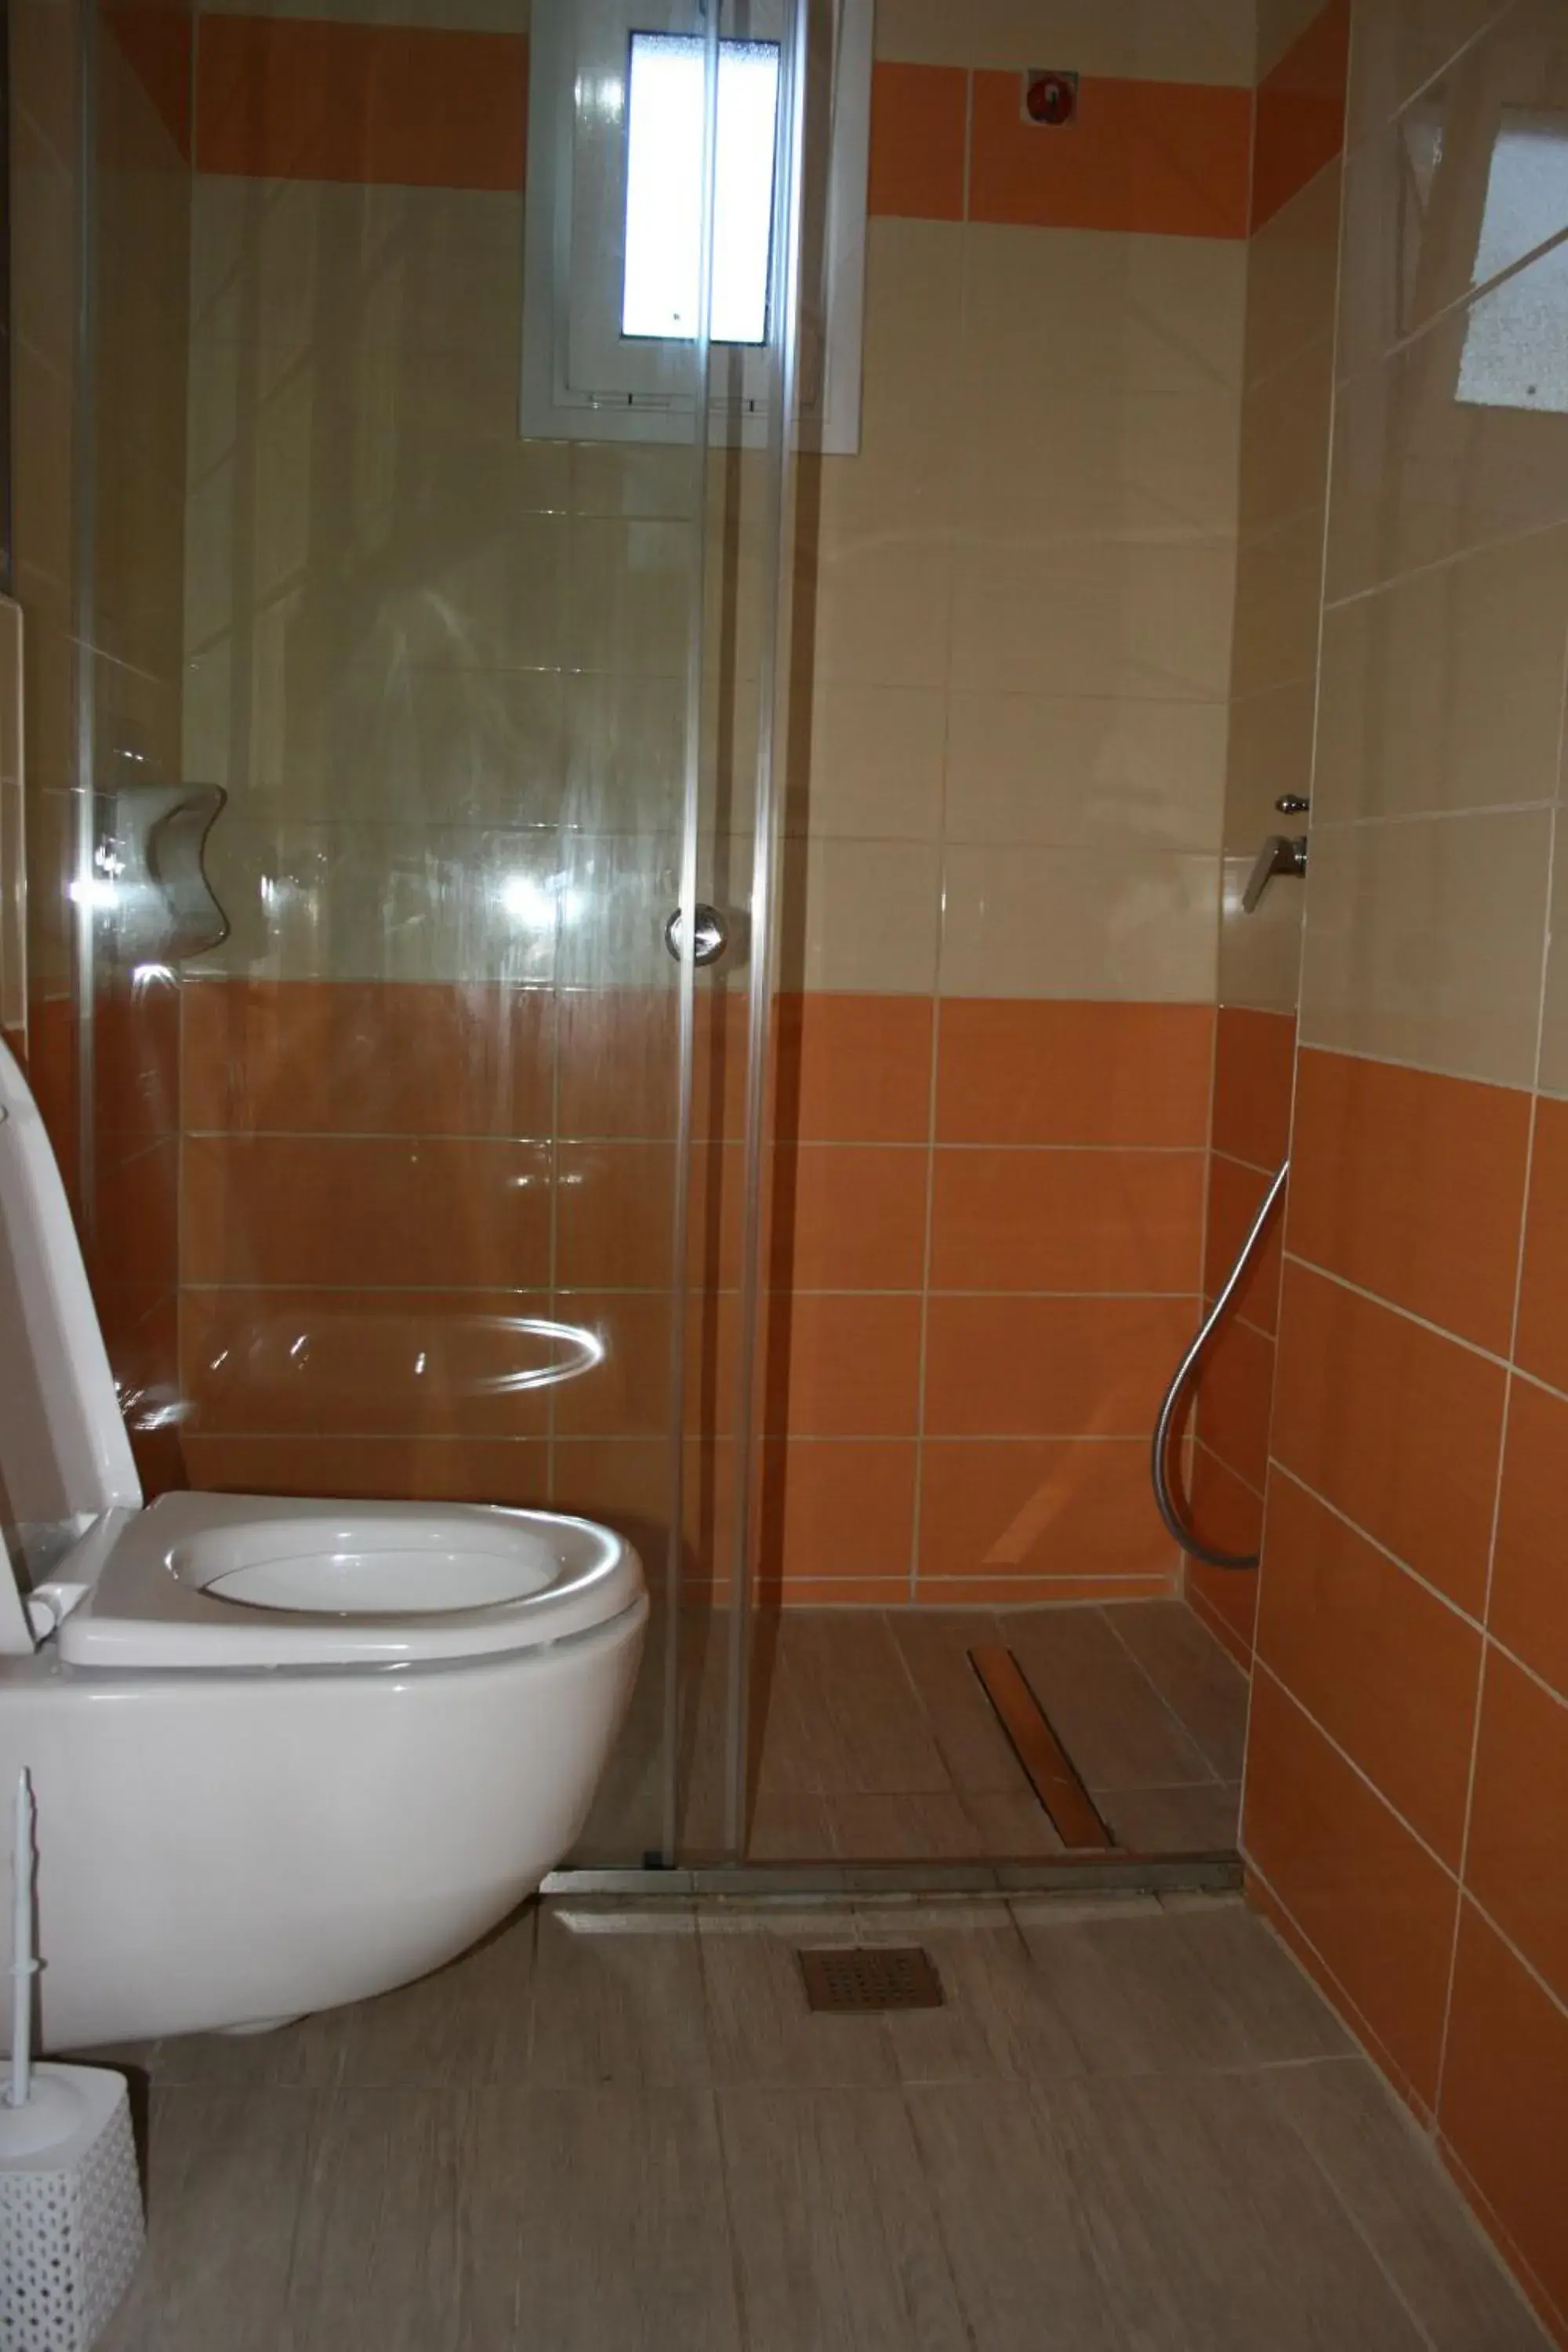 Bathroom in Metaxa Hotel